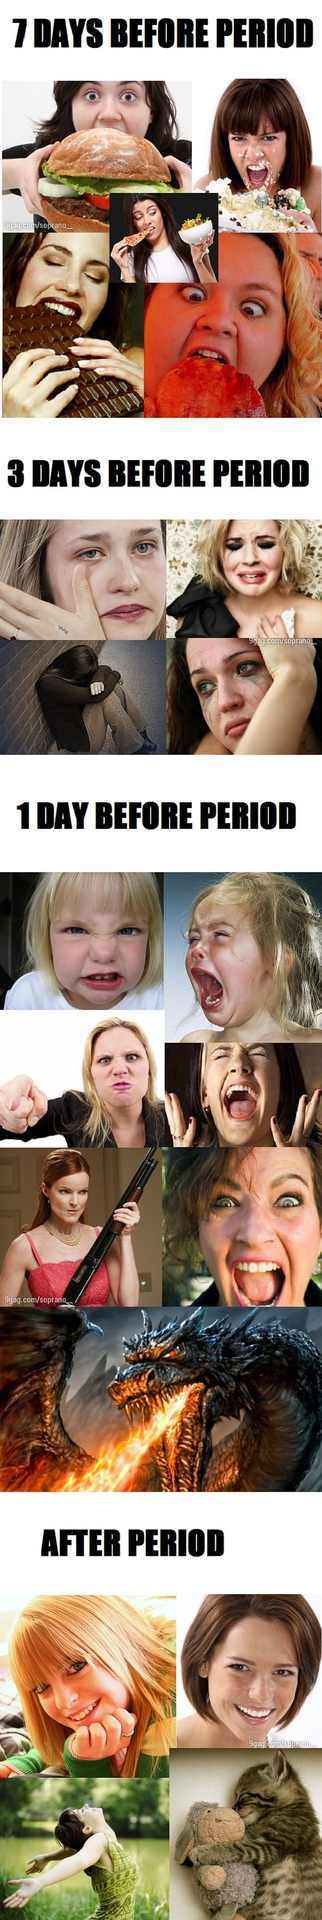 period pains - meme